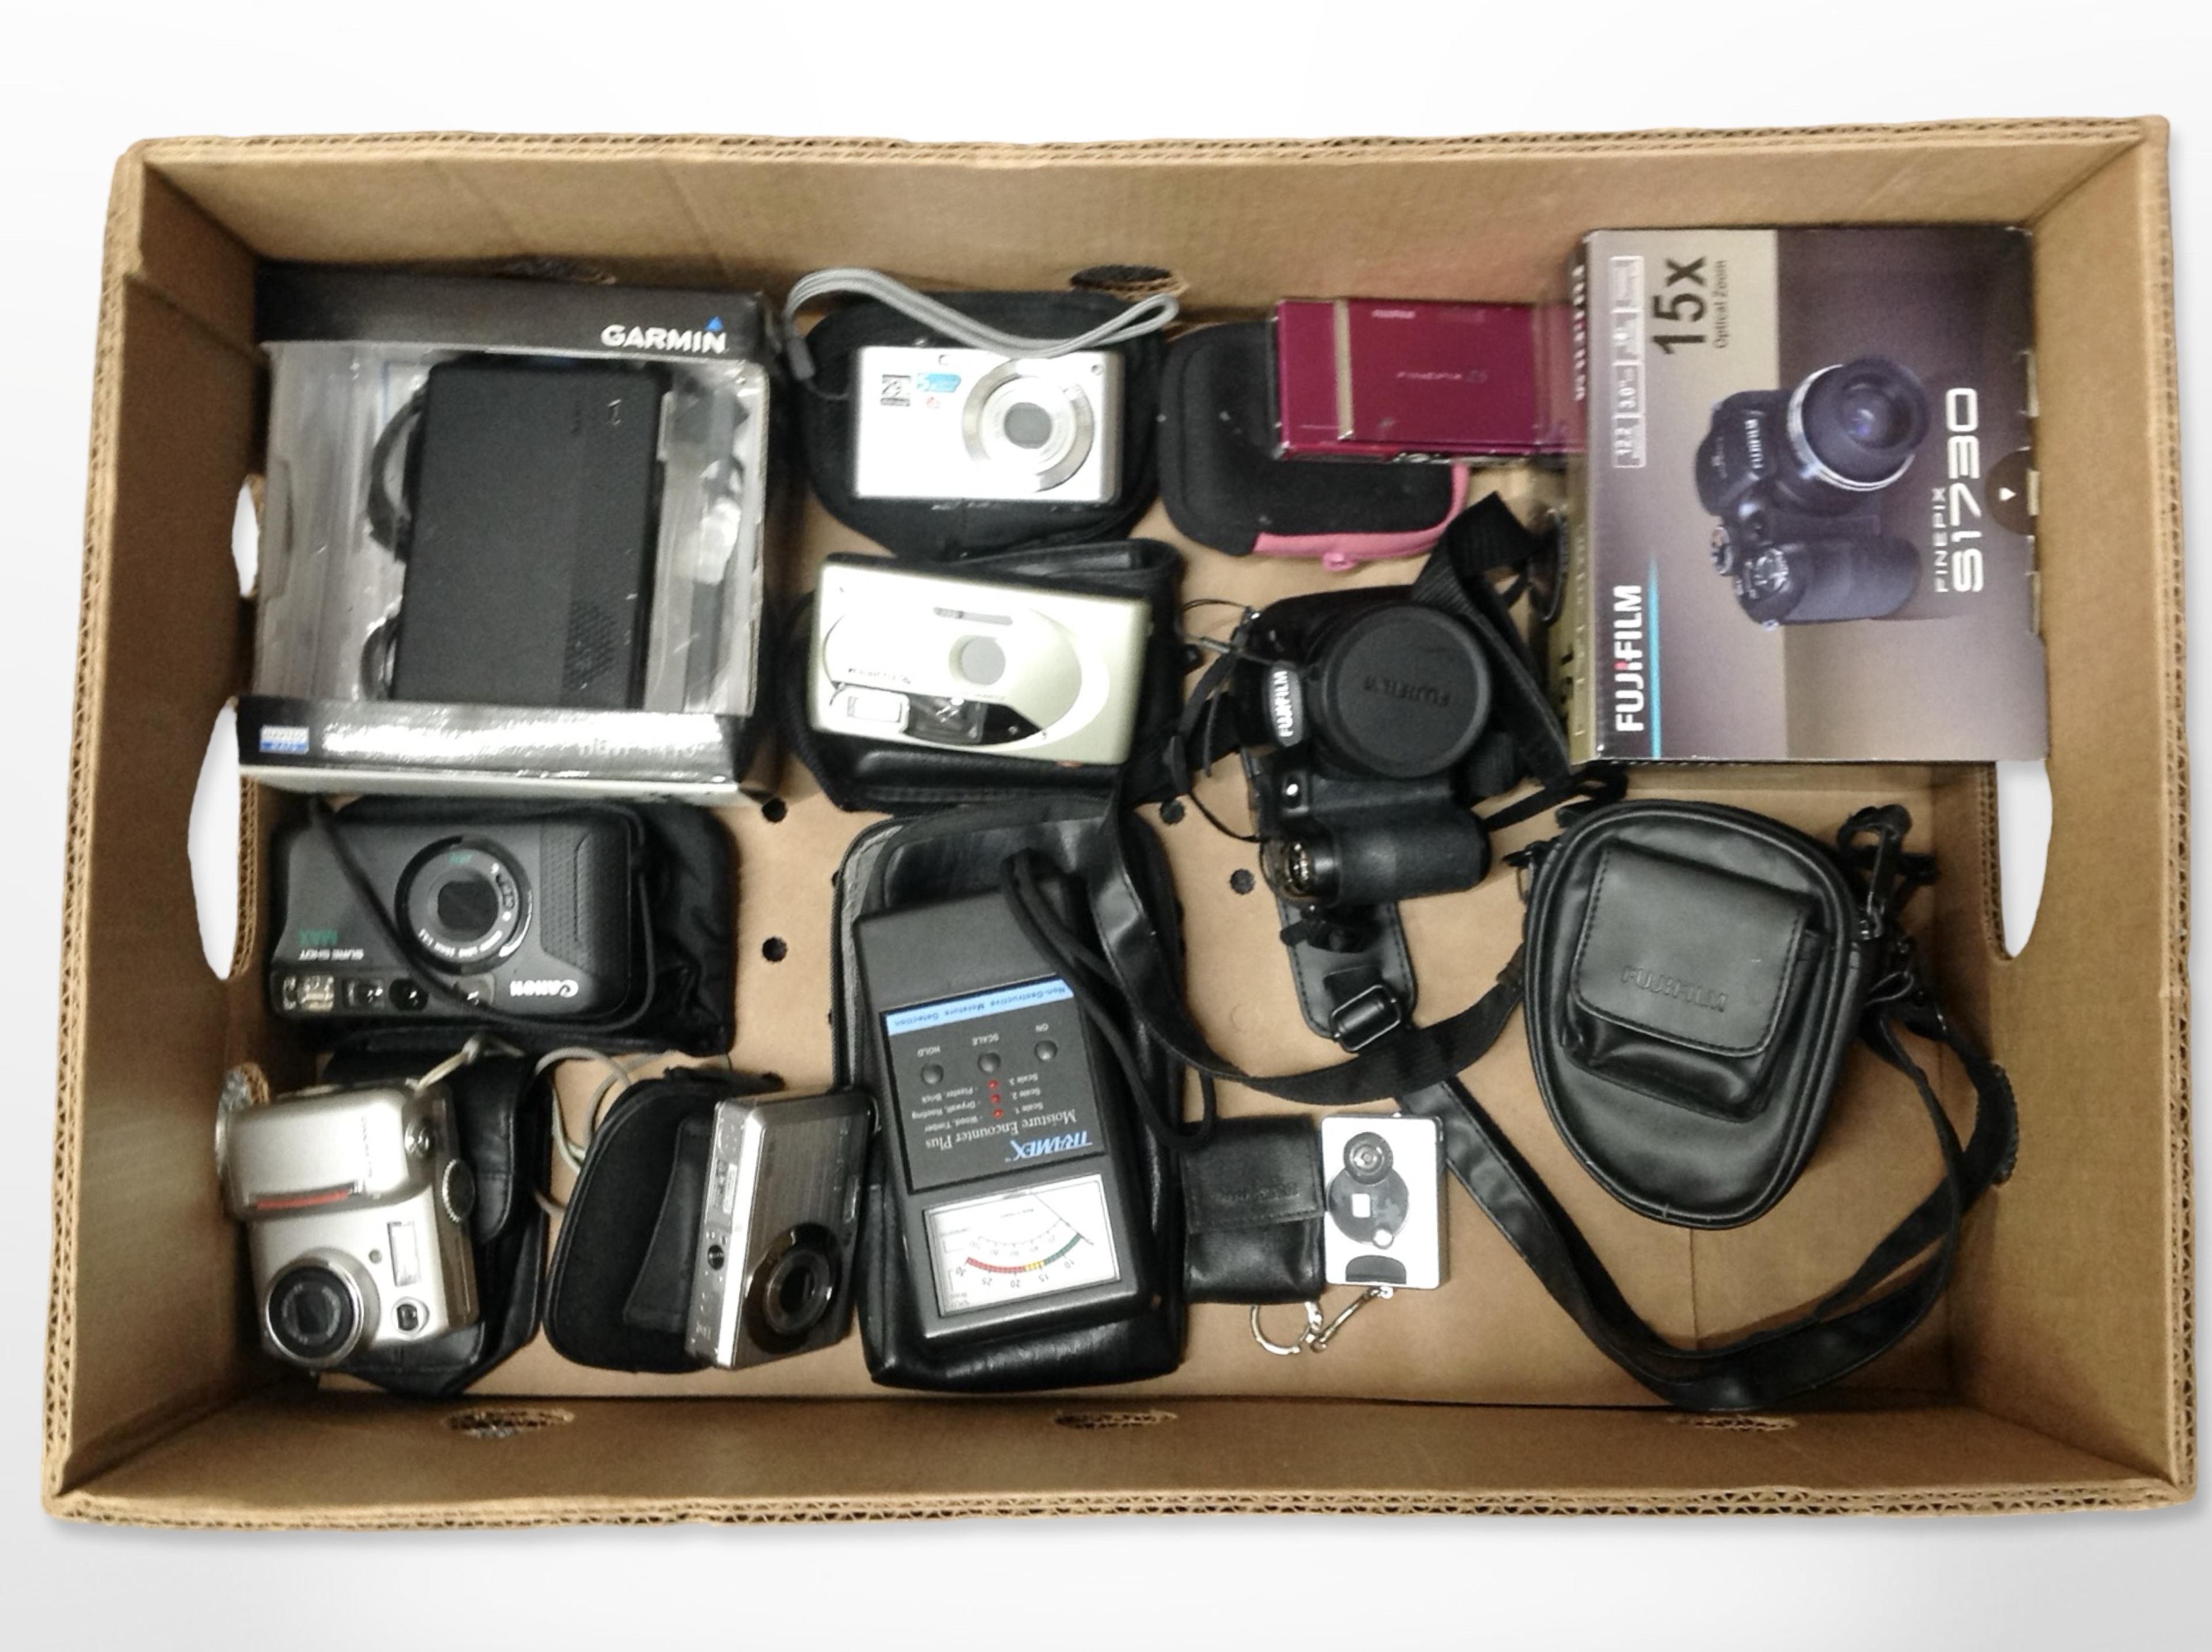 A group of digital cameras including Fujifilm S1730, Canon, Nikon, etc., Garmin Sat-Nav, etc.